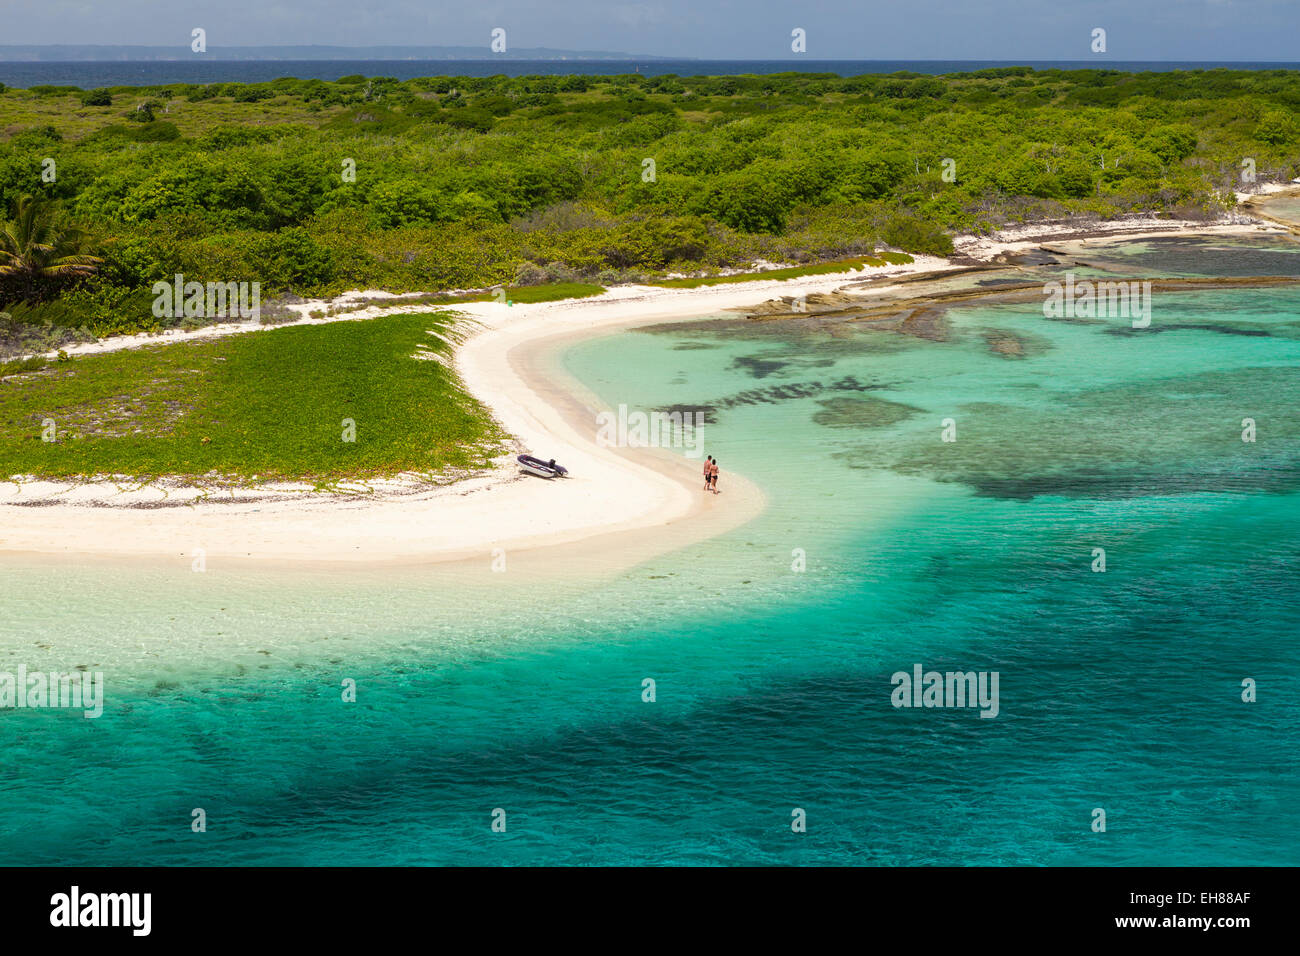 Playa de arena y una laguna azul, Petite Terre, Guadeloupe Foto de stock